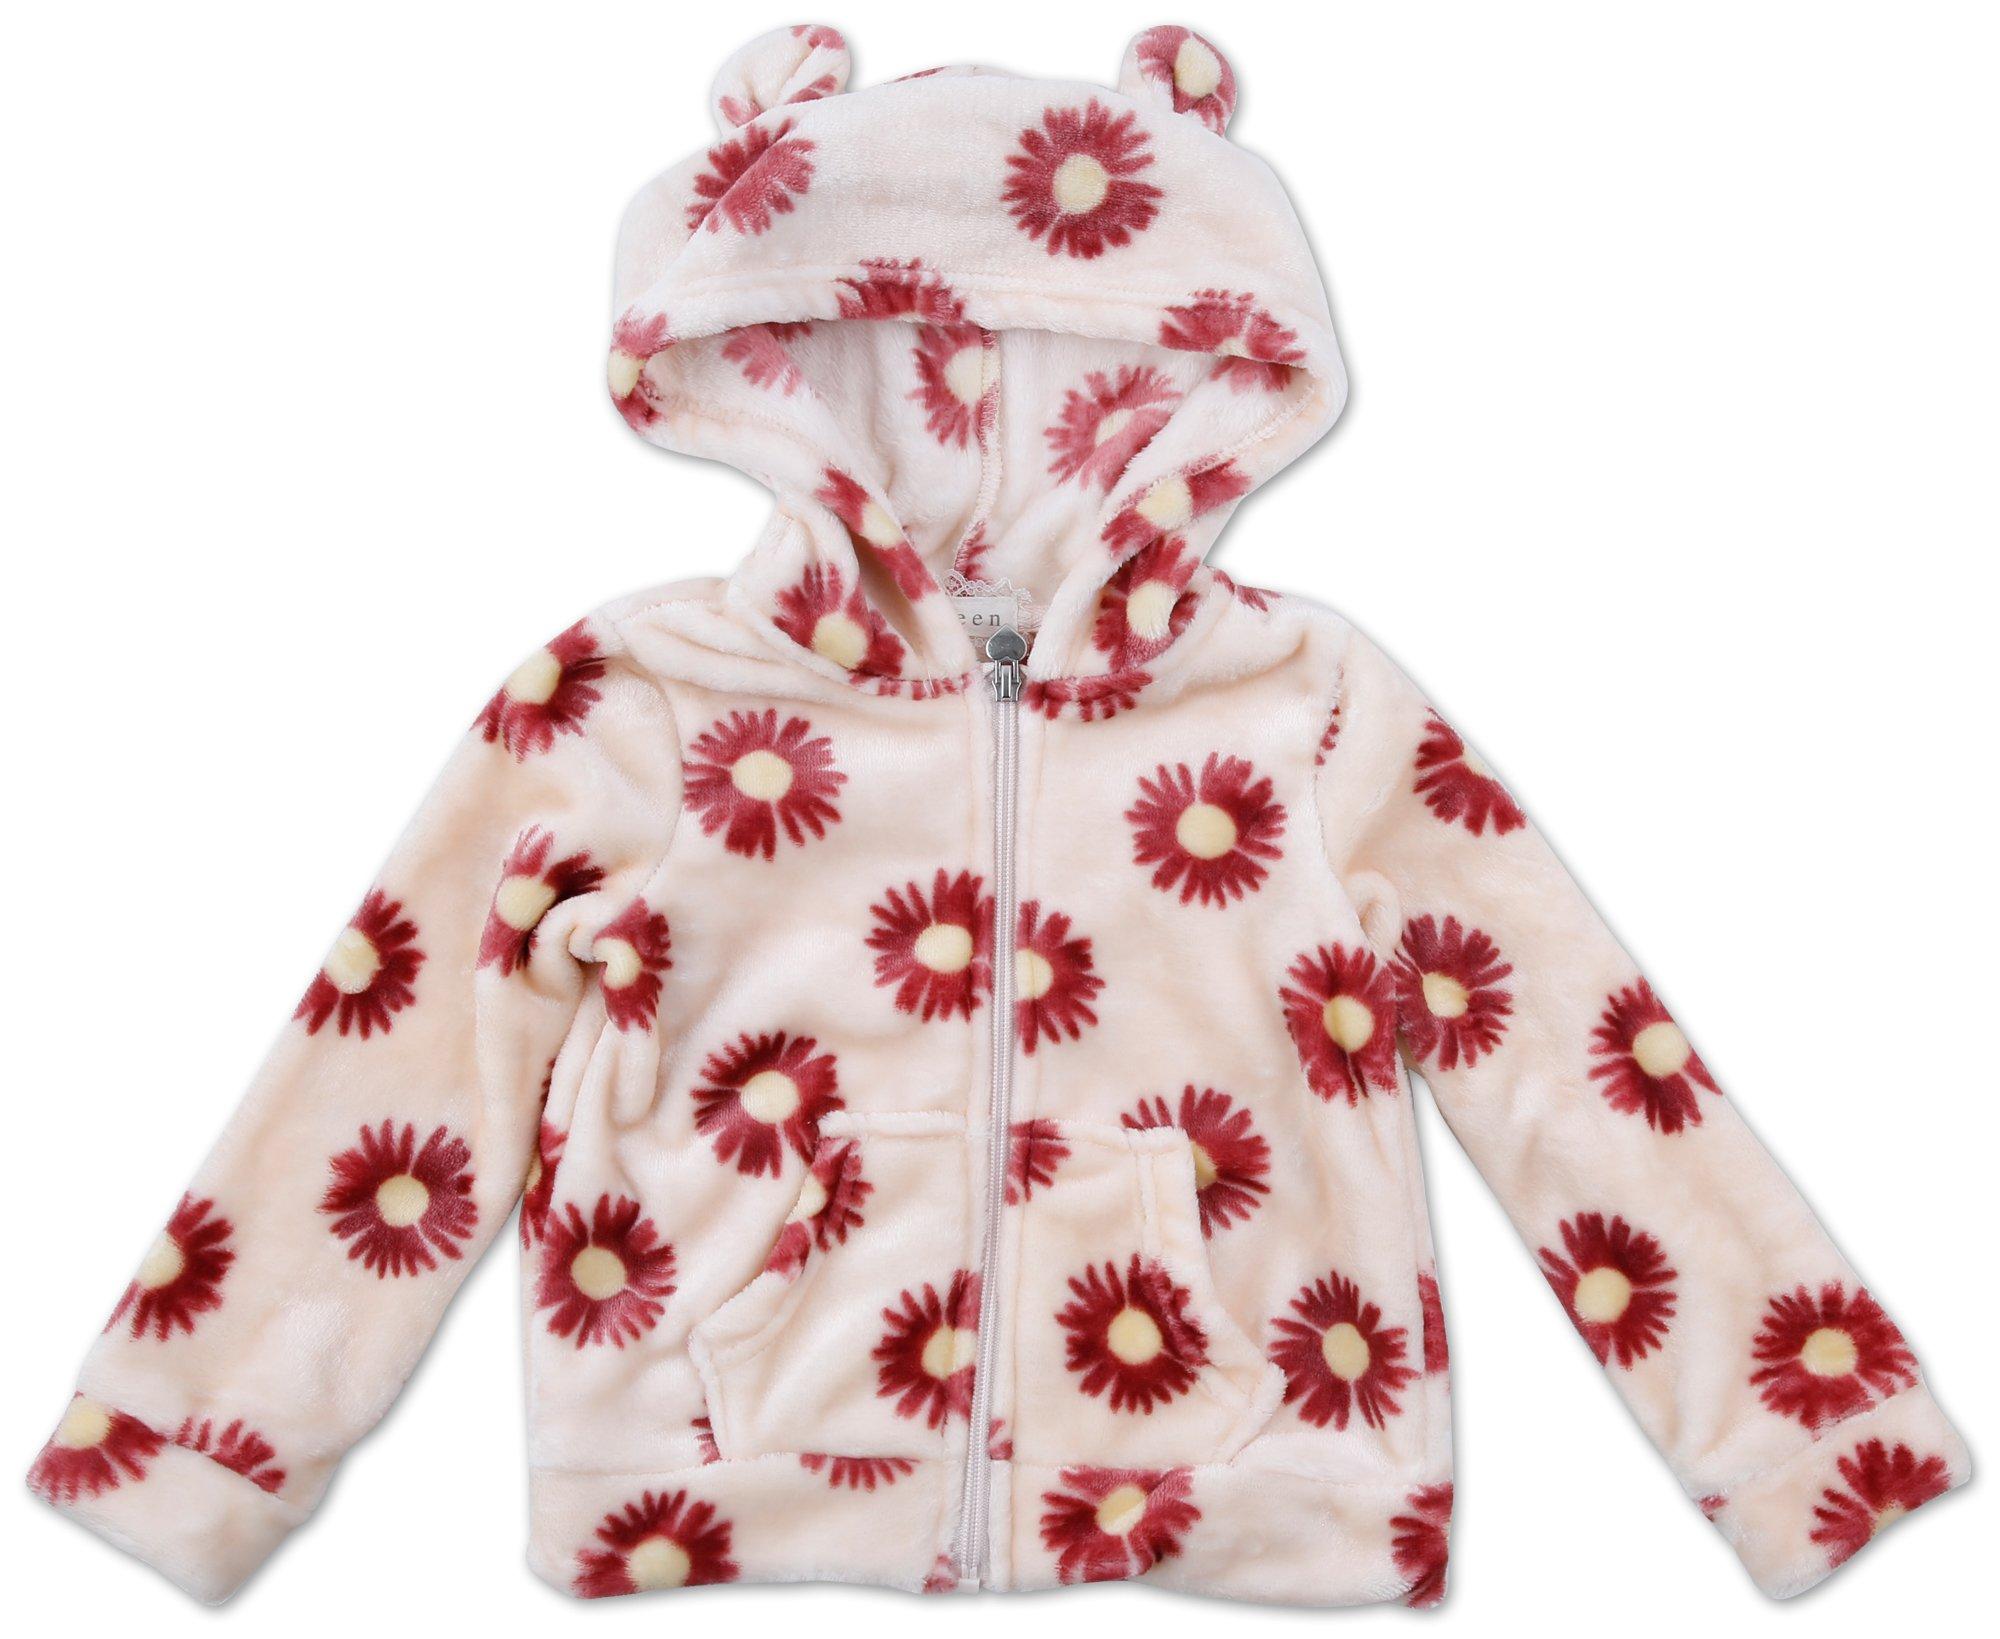 Little Girls Floral Jacket